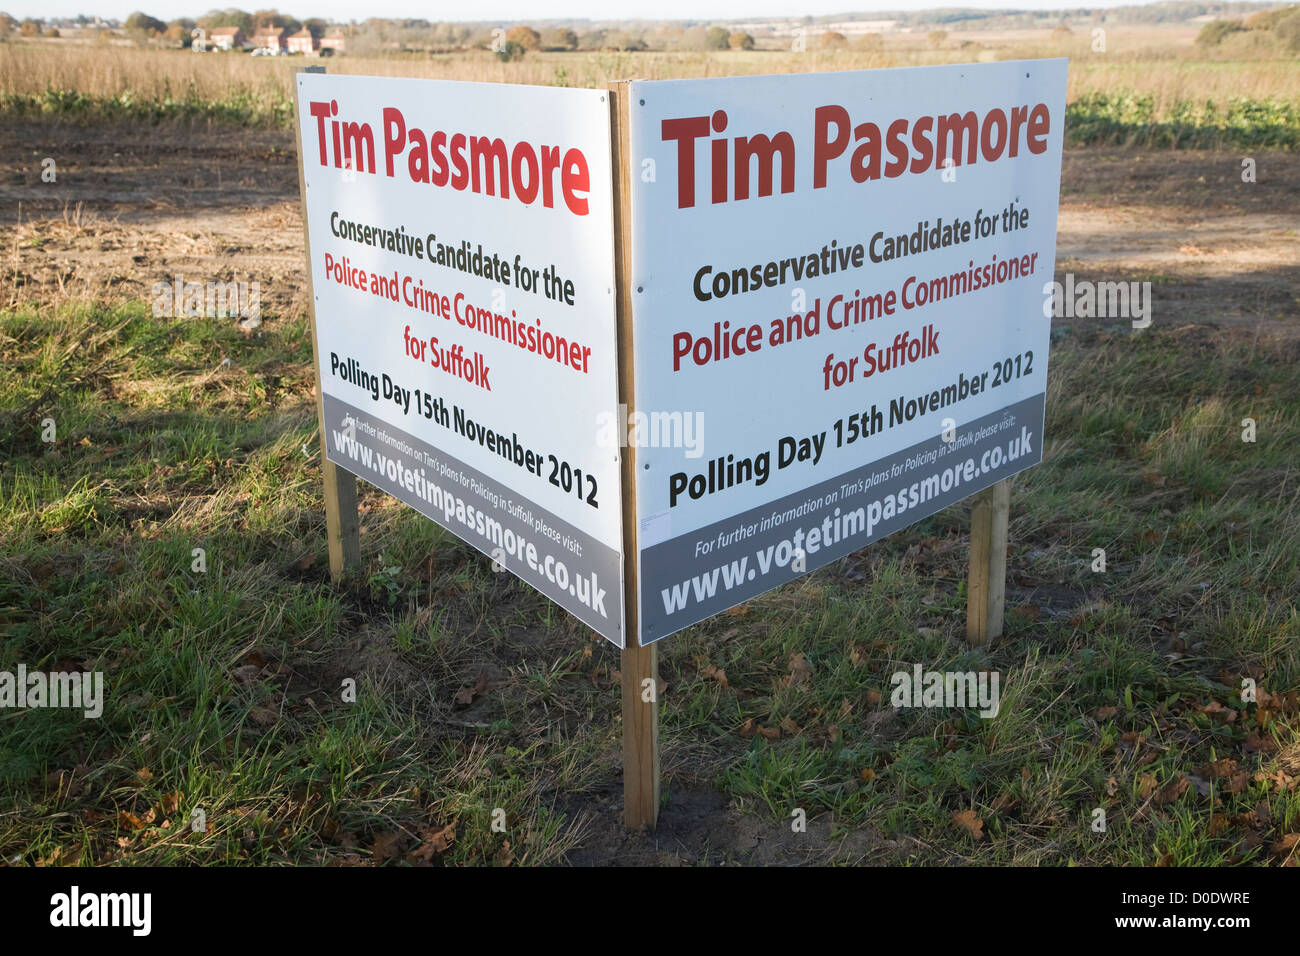 La police et le crime Tim Passmore élection Commissaire 15 Novembre 2012 Banque D'Images